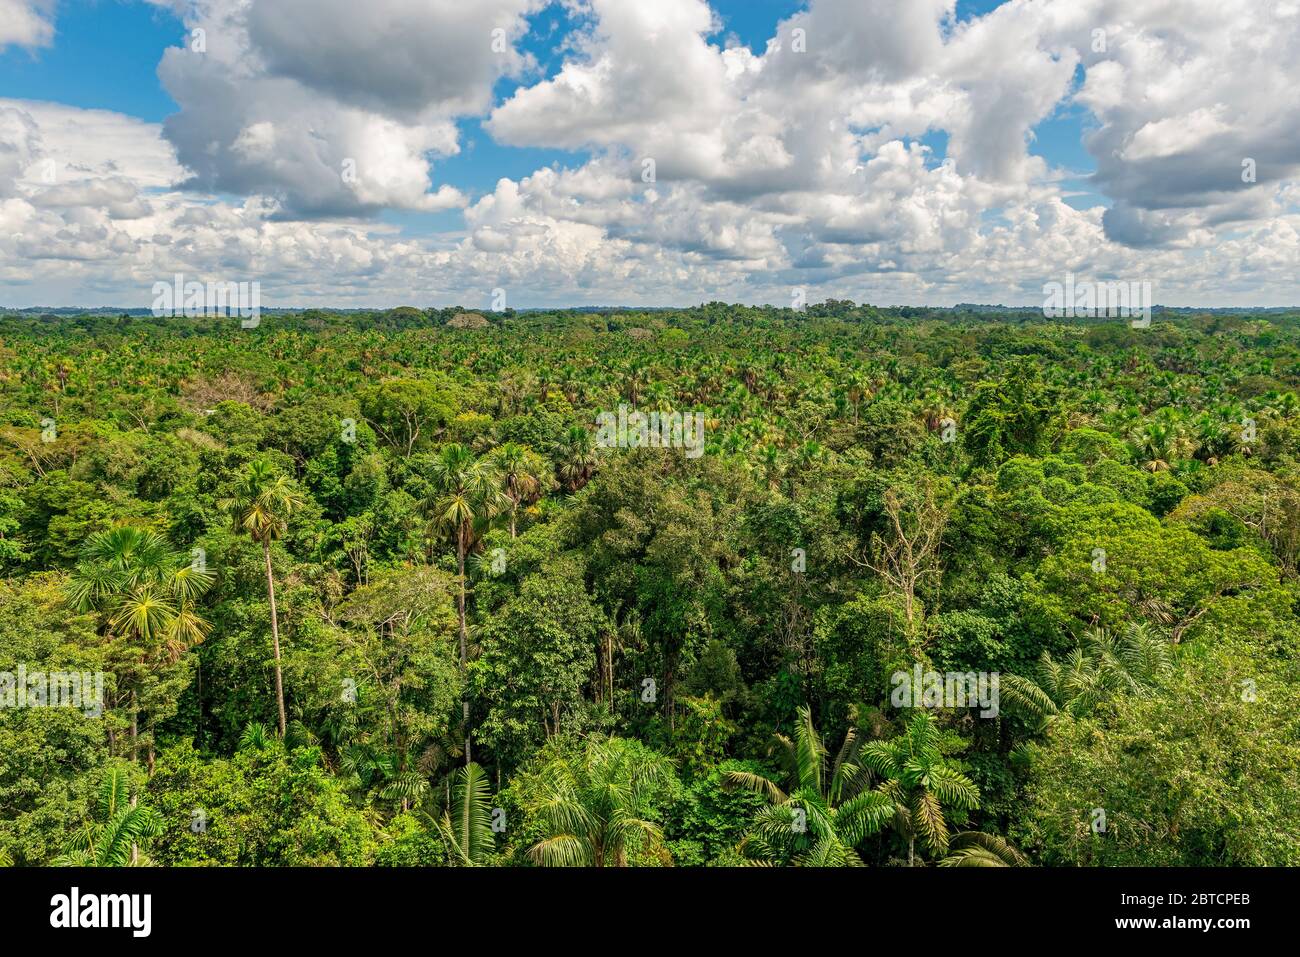 Vue aérienne de la forêt amazonienne qui comprend les pays suivants : Brésil, Bolivie, Colombie, Équateur, Guyana, Pérou, Suriname et Venezuela. Banque D'Images